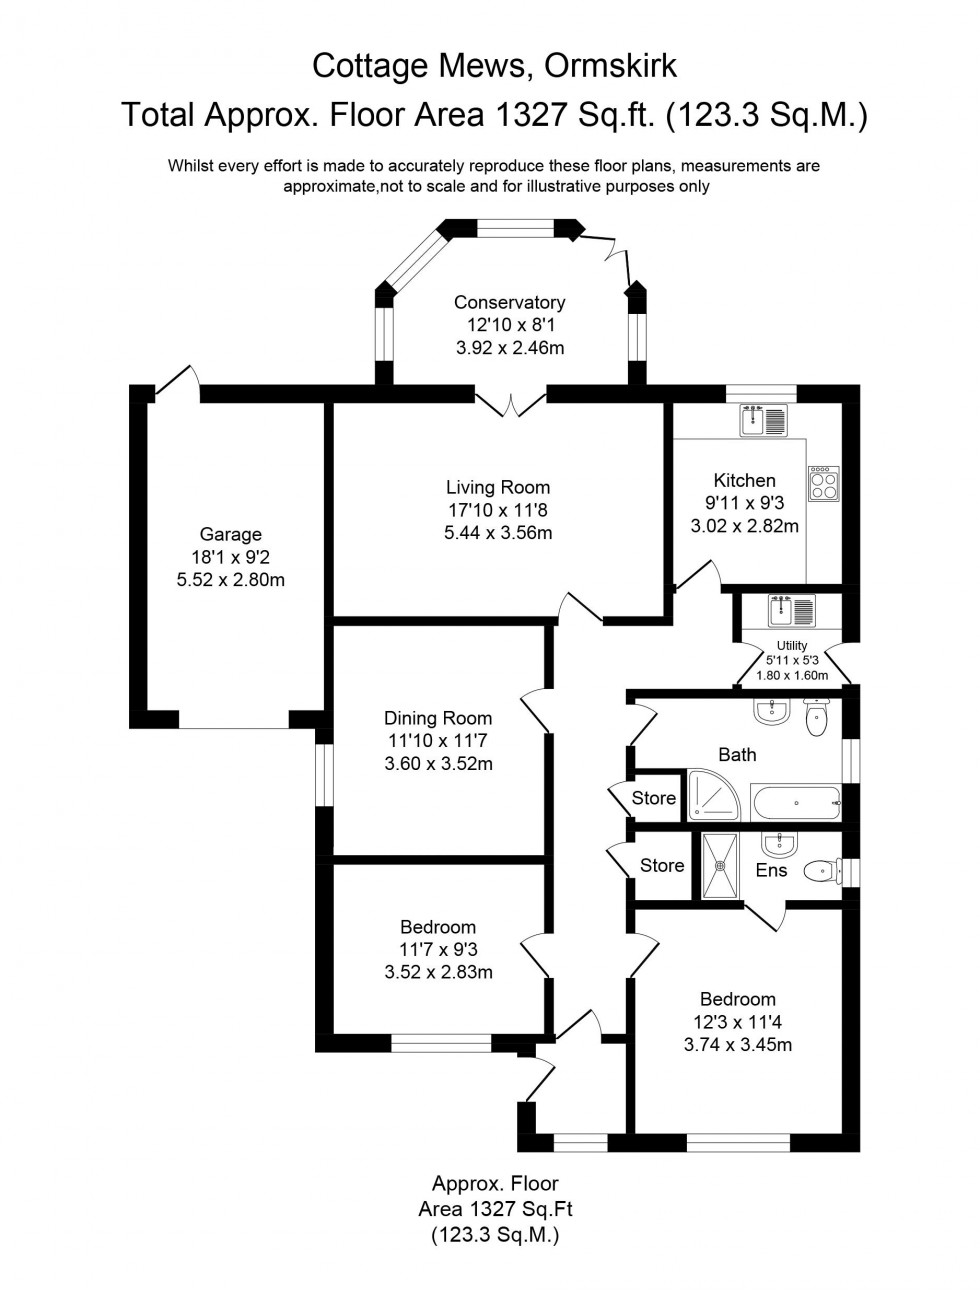 Floorplan for Cottage Mews, Ormskirk